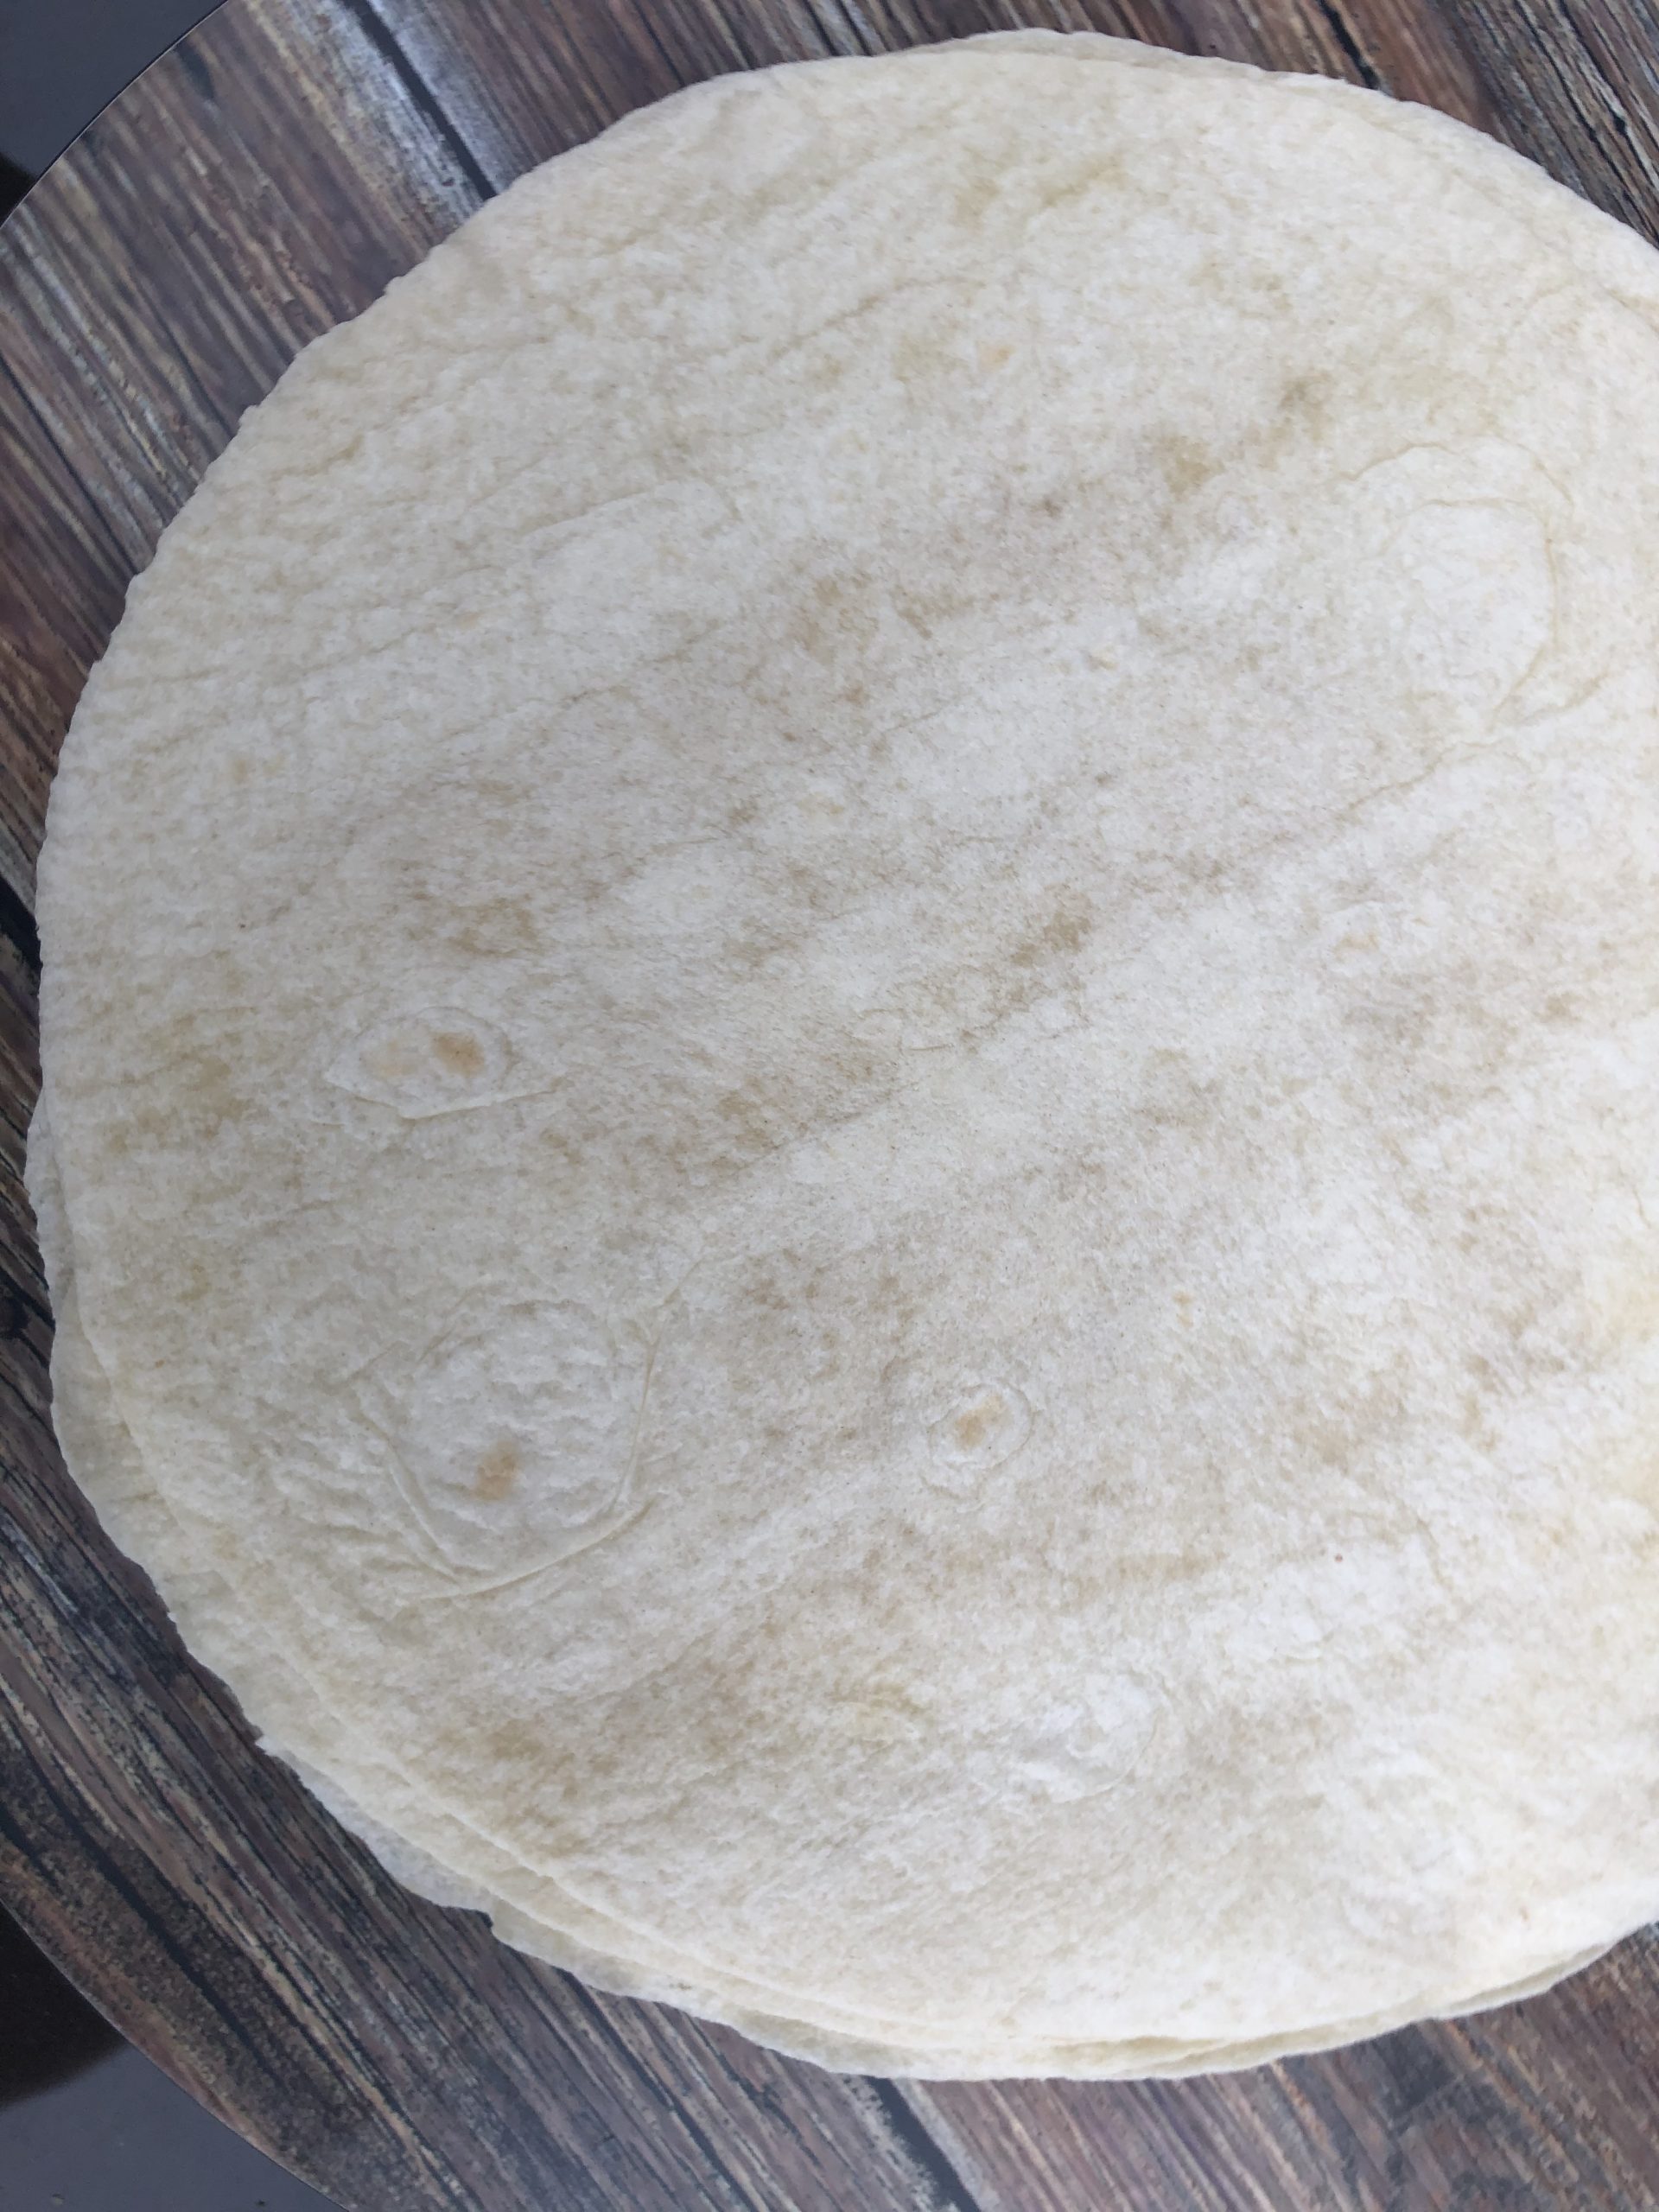 Homemade Mexican Flour Tortilla Recipe With No Lard